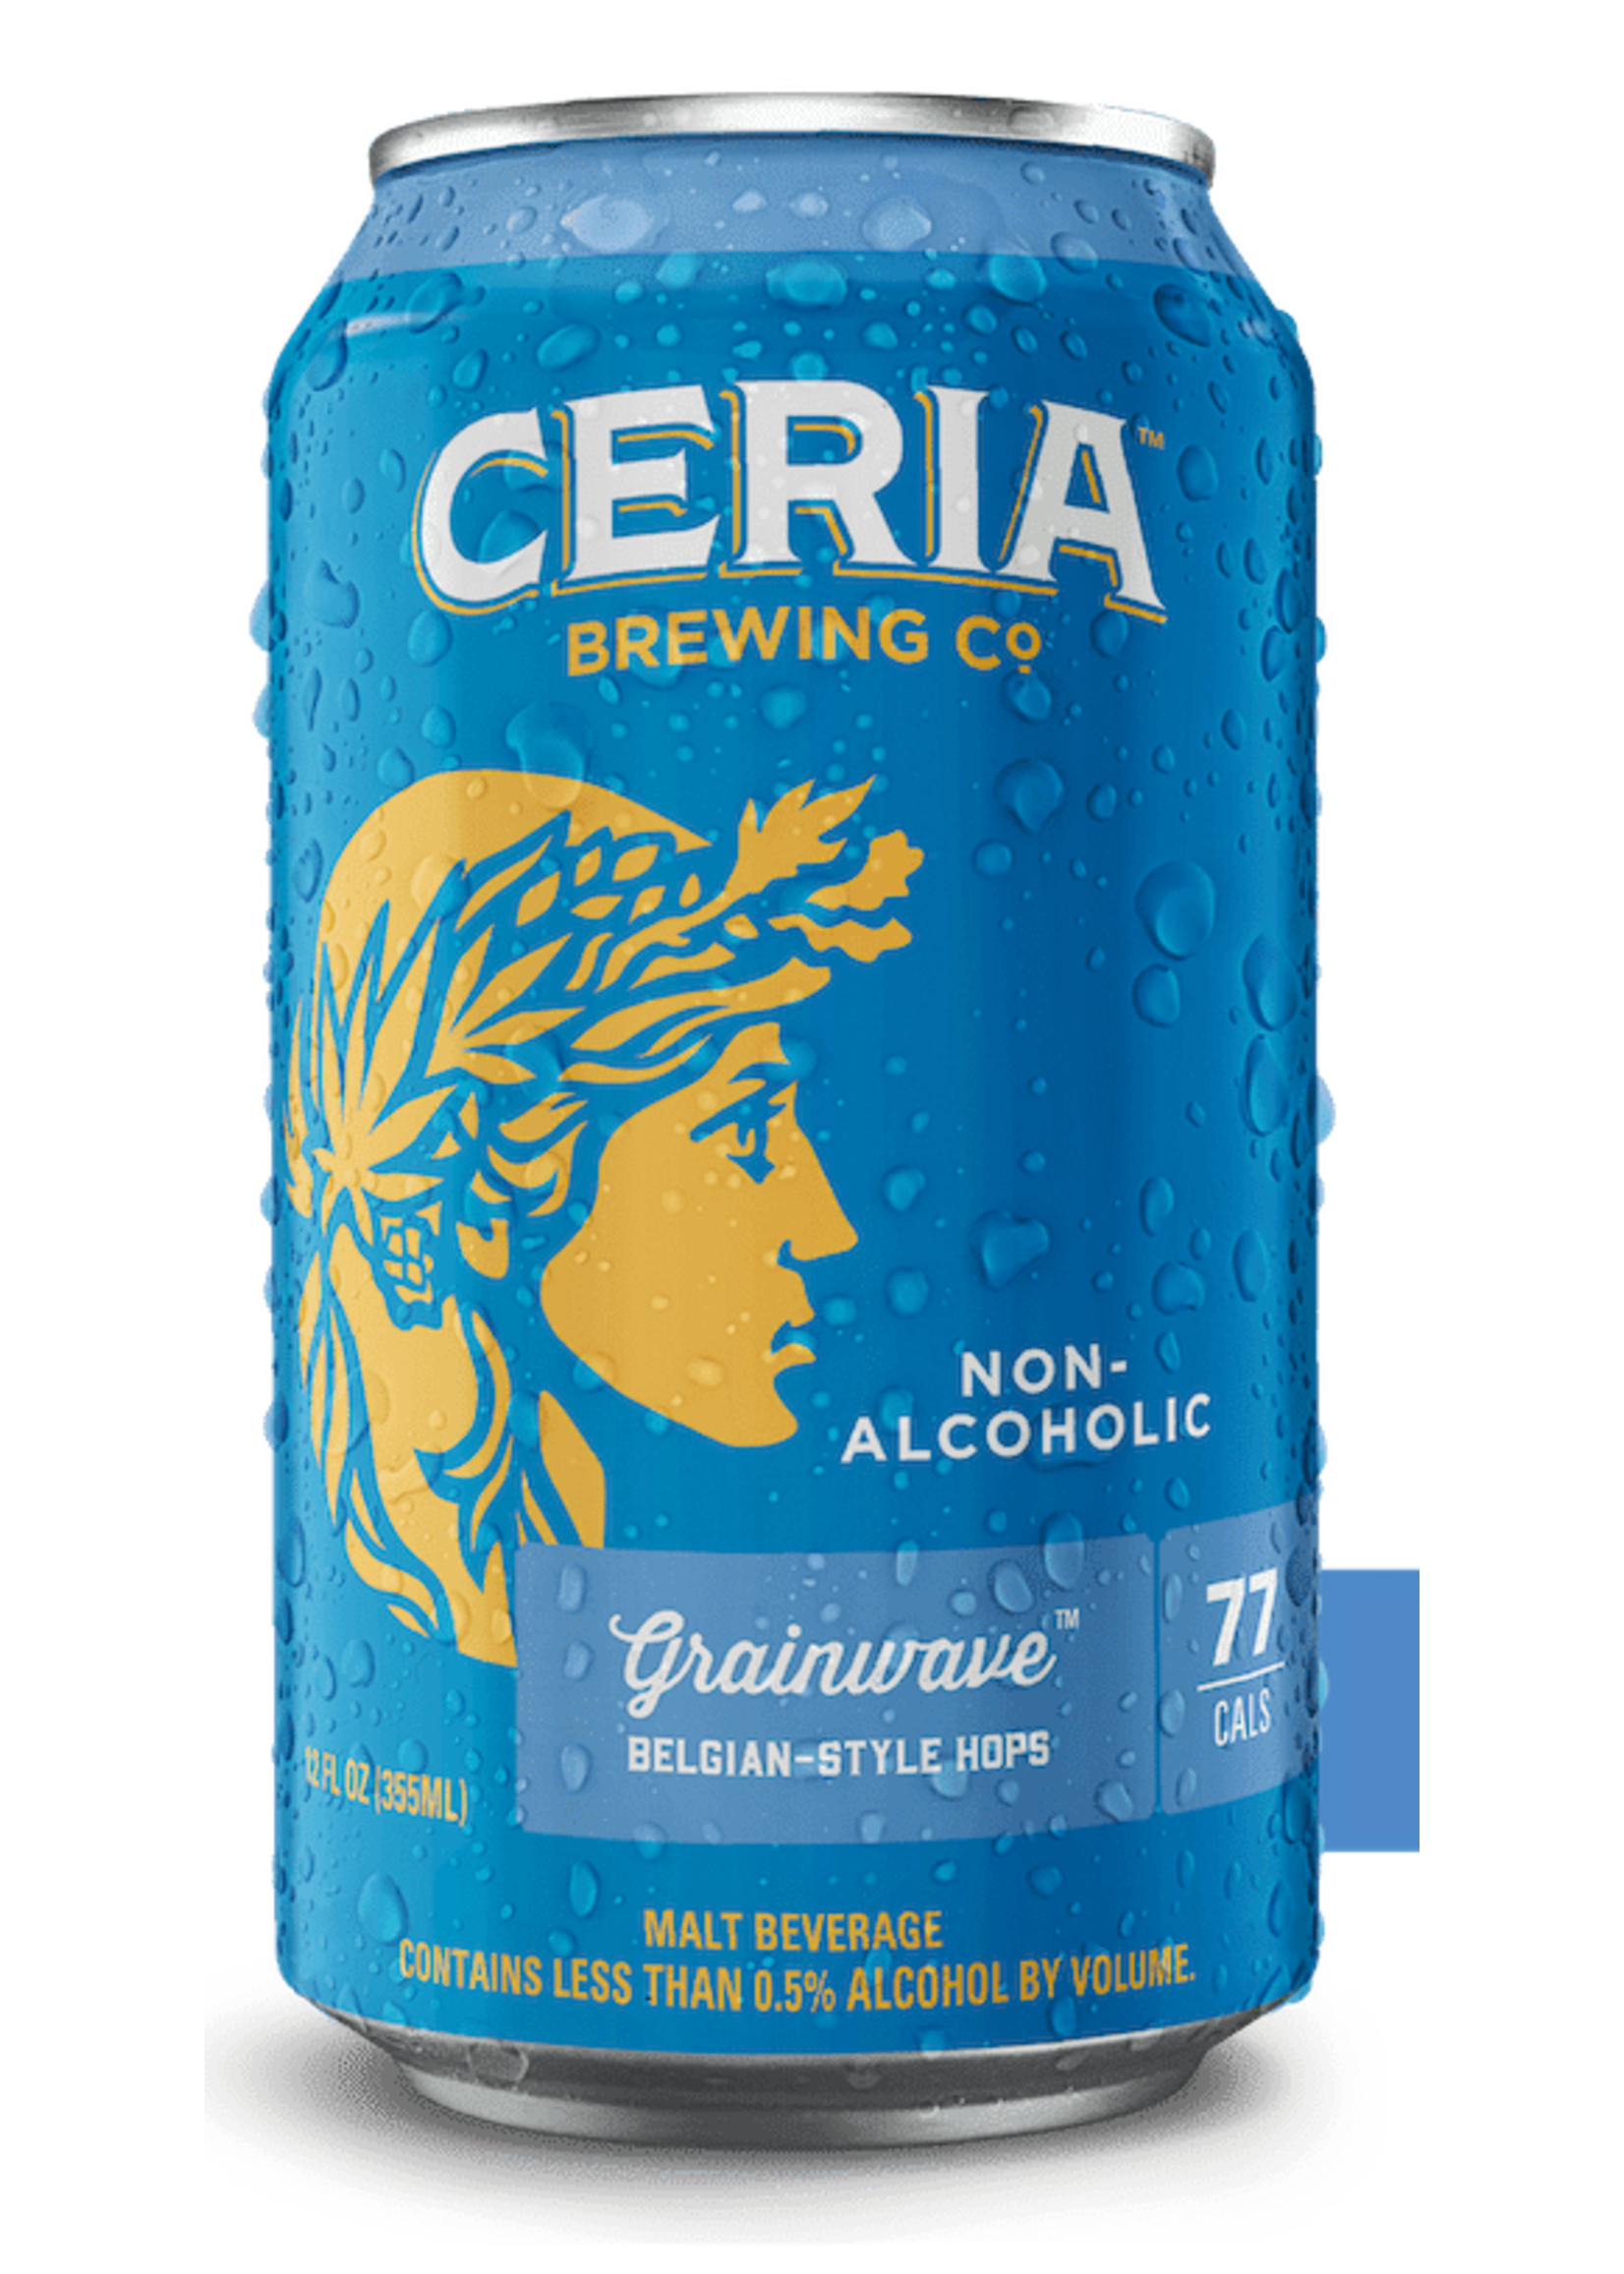 Ceria Brewing Co. Non- Alcholic Beer 6Pack - Ceria Brewing Co. - Grainwave